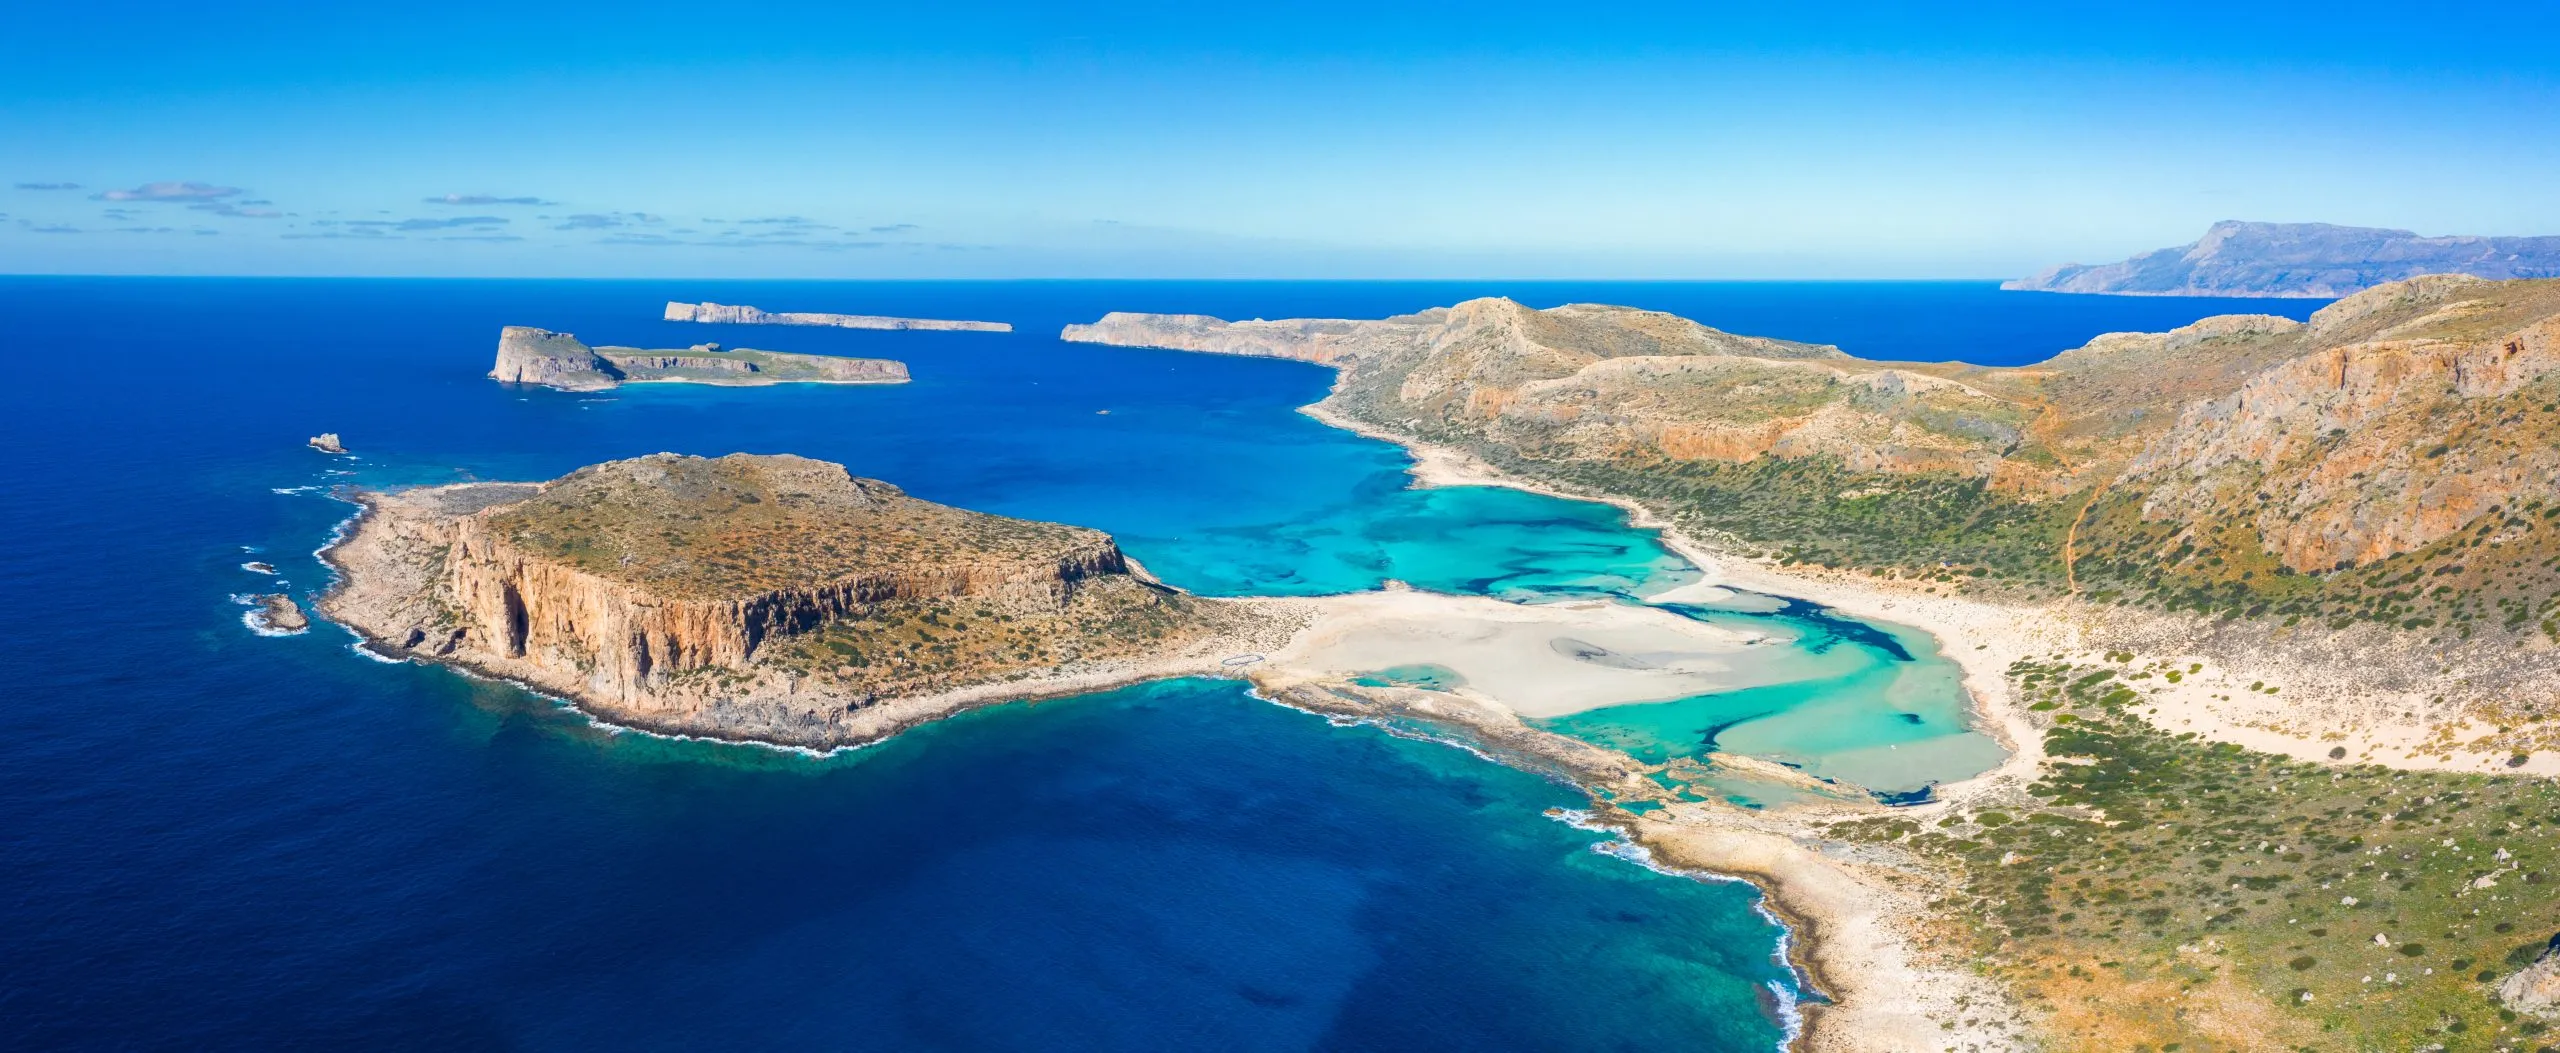 Incredibile vista della laguna di Balos con le sue magiche acque turchesi, le lagune, le spiagge tropicali di sabbia bianca e l'isola di Gramvousa a Creta, in Grecia.